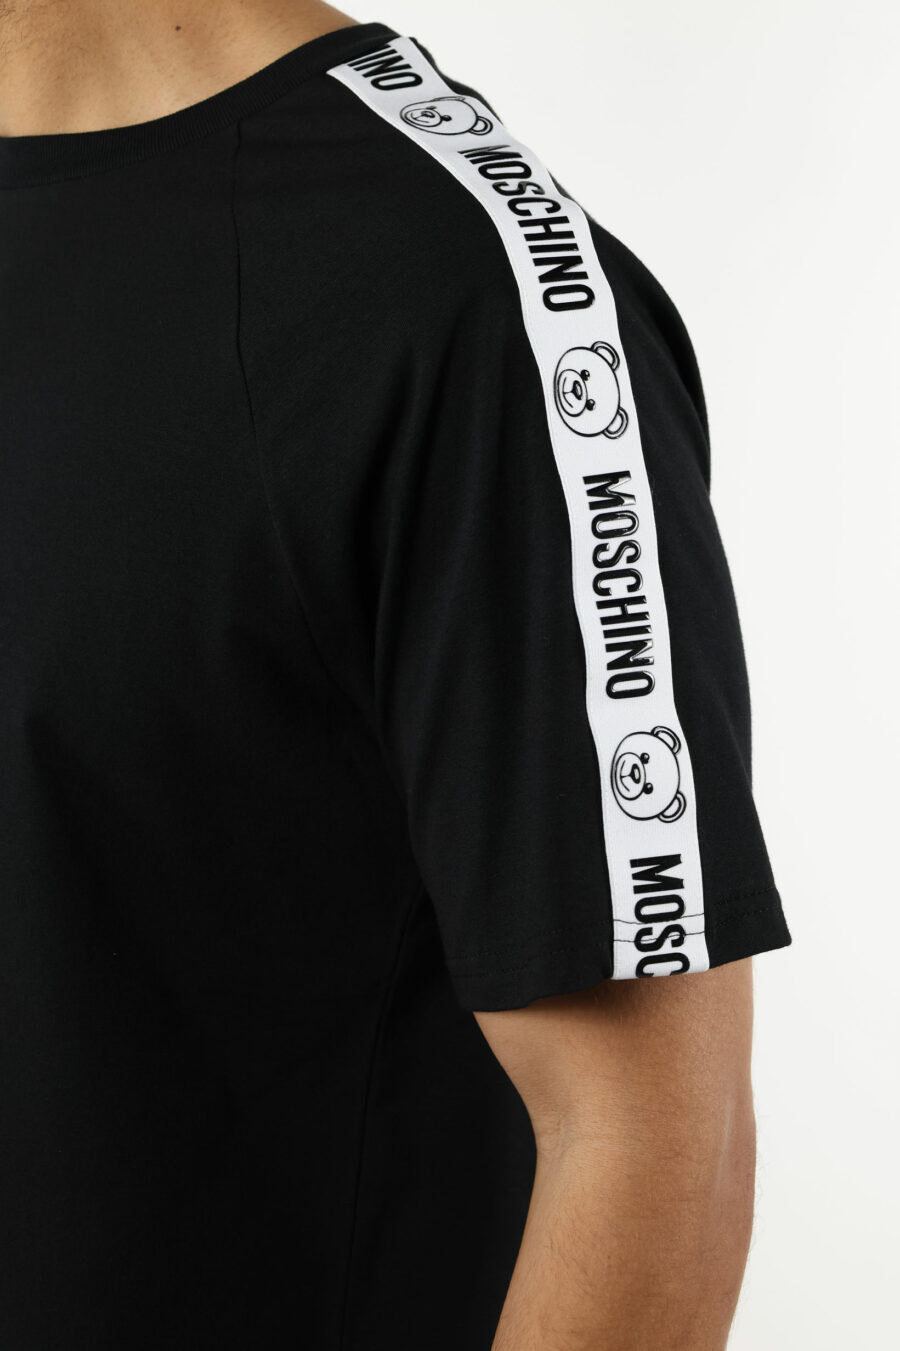 Camiseta negra con logo oso "underbear" en cinta hombros - 110999